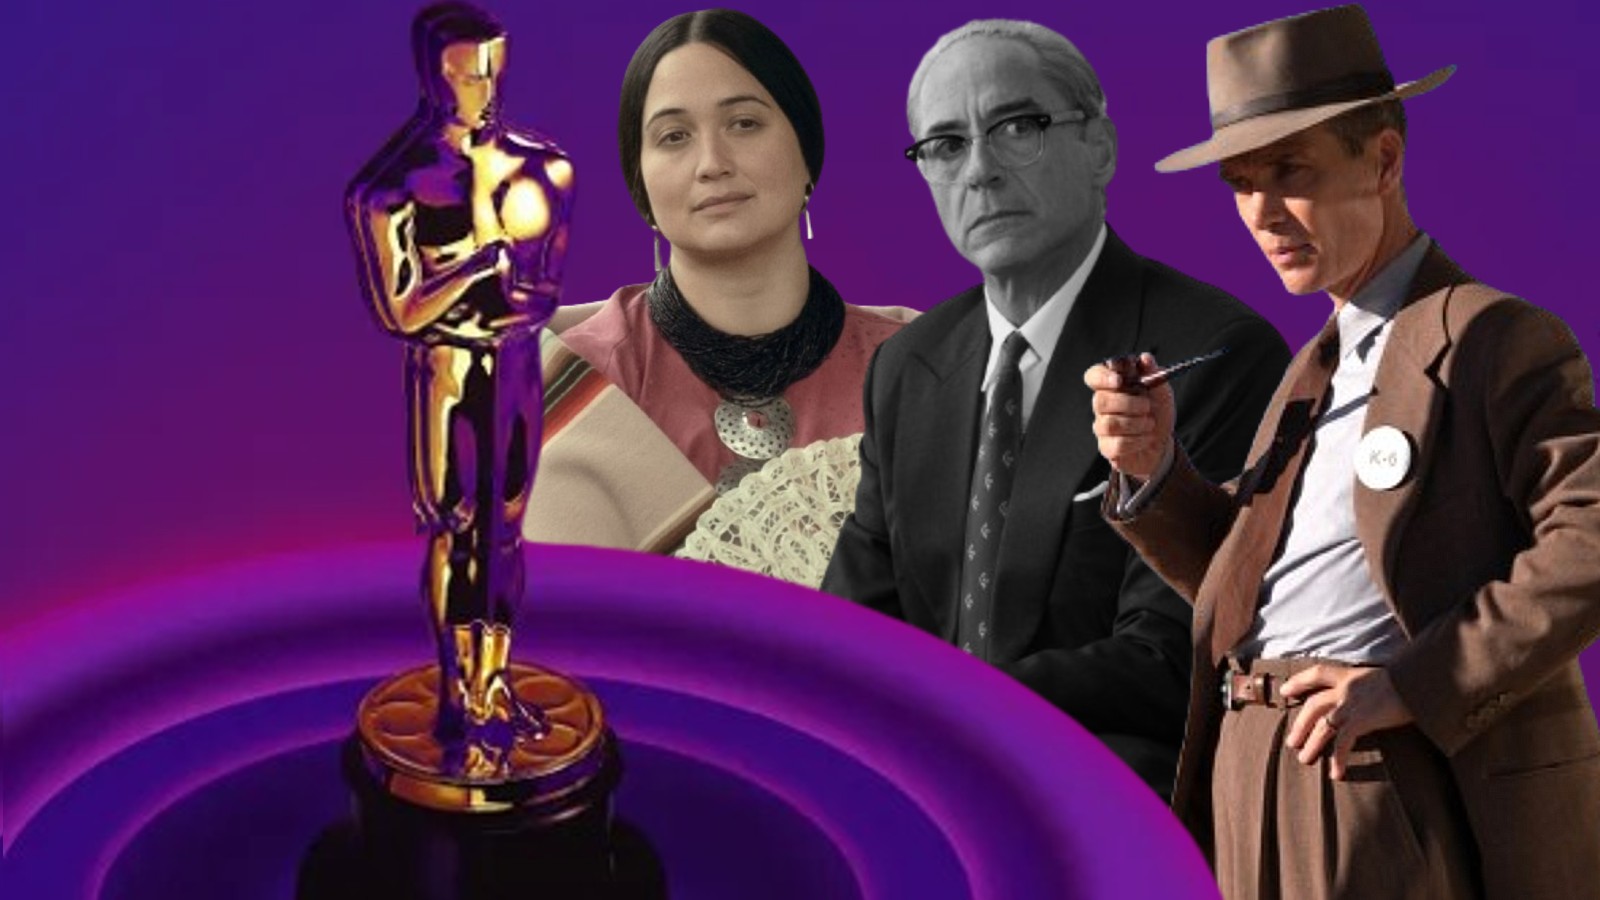 7 Ways to Watch Oscars Online - TechPP